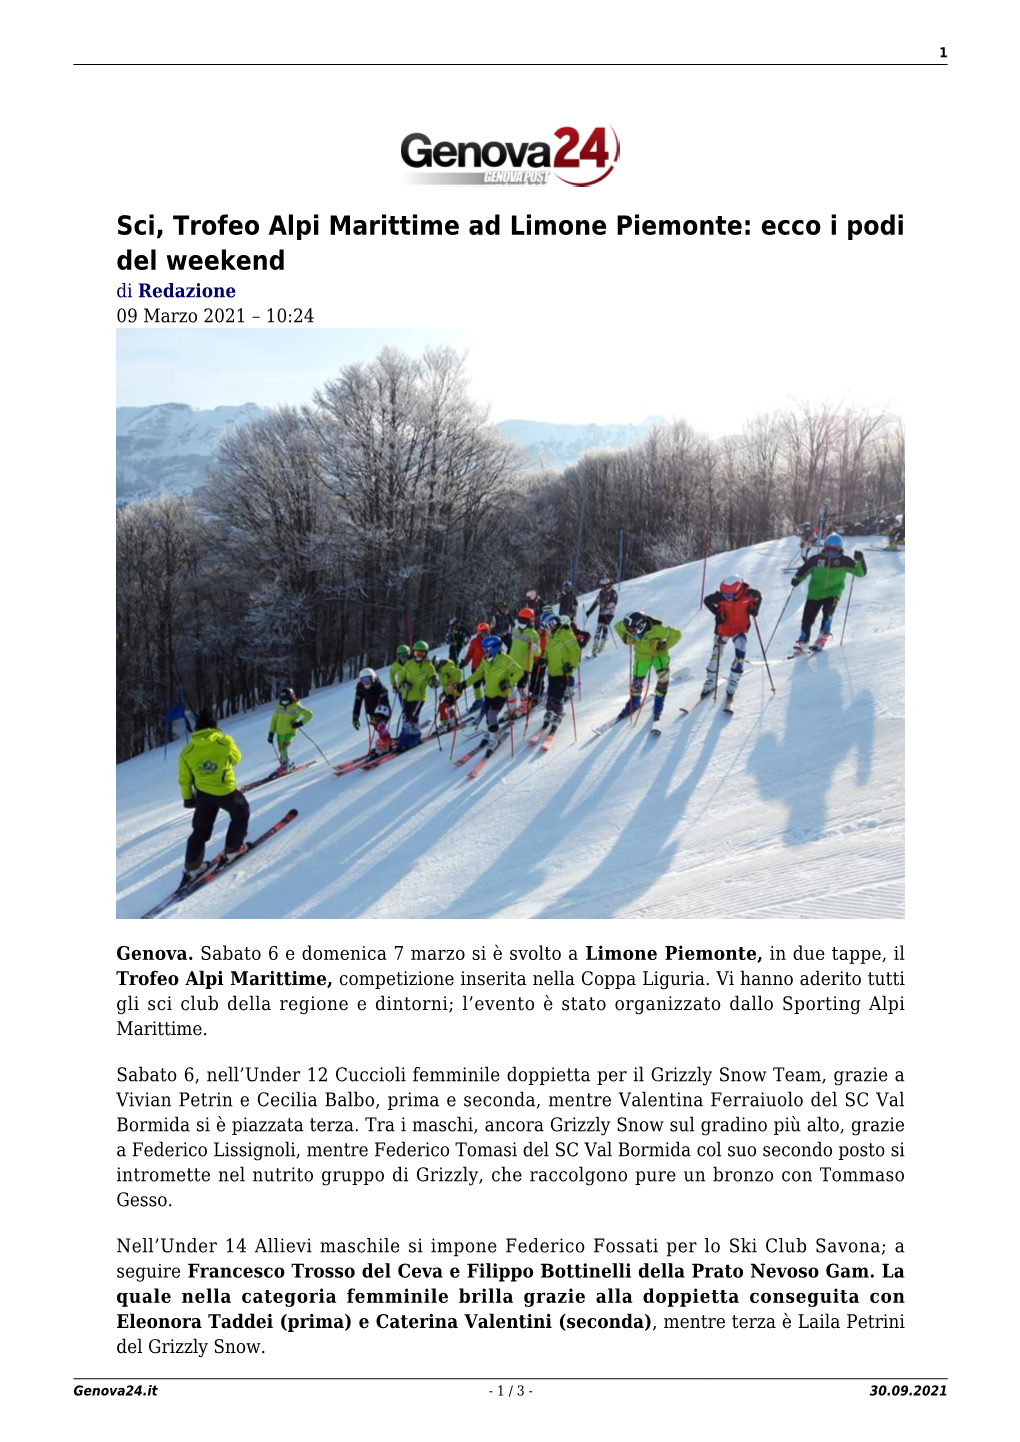 Sci, Trofeo Alpi Marittime Ad Limone Piemonte: Ecco I Podi Del Weekend Di Redazione 09 Marzo 2021 – 10:24